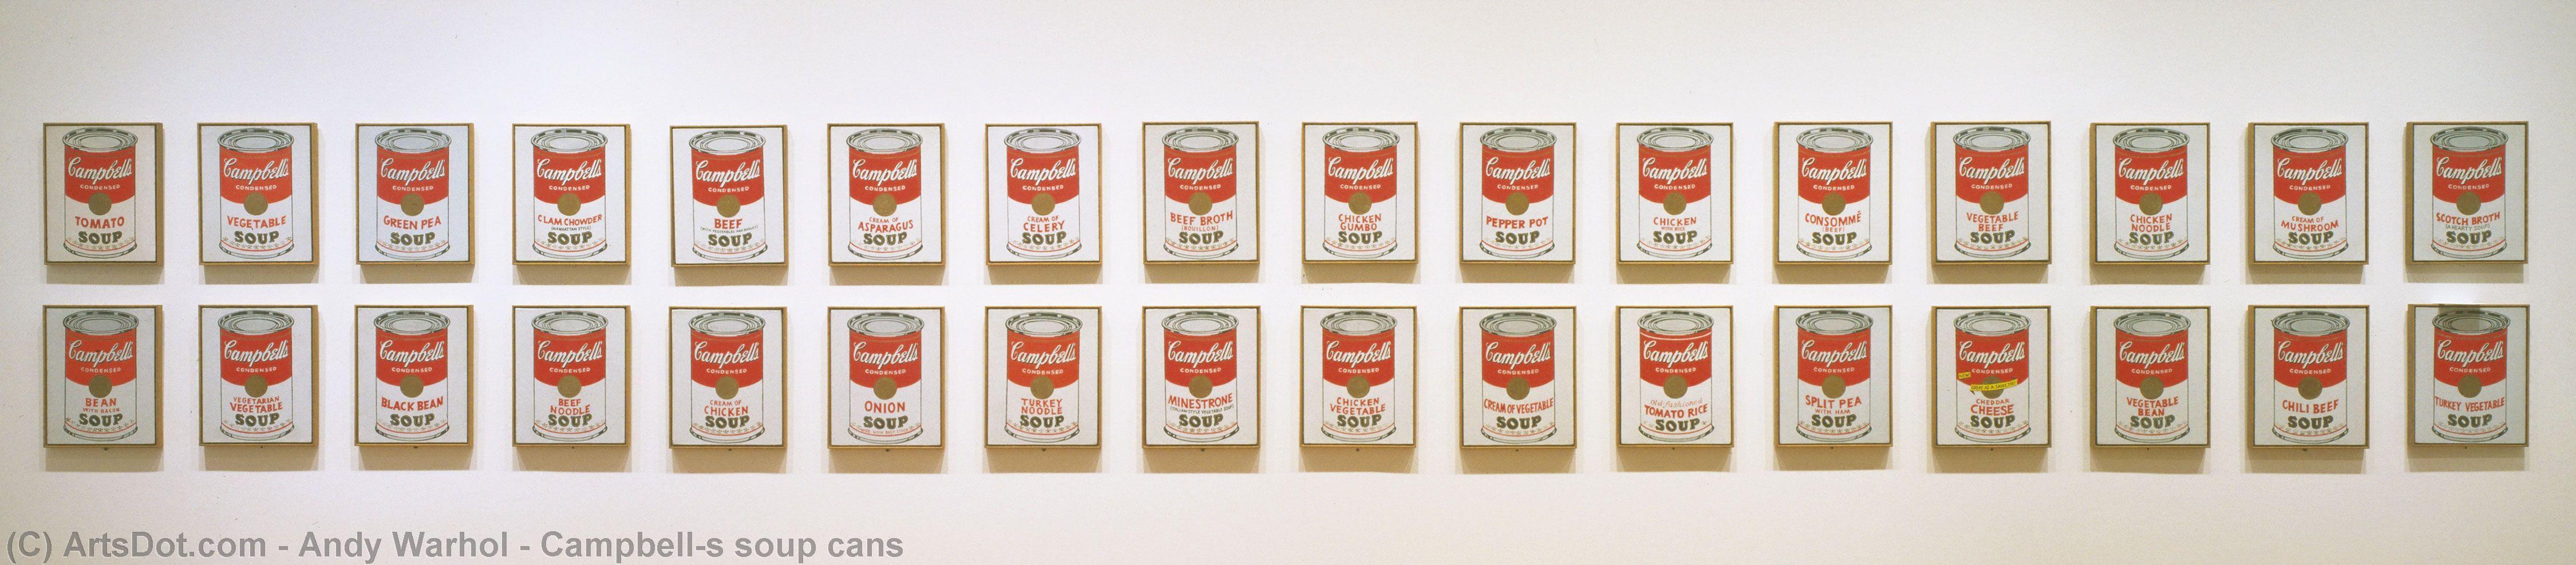 WikiOO.org - Энциклопедия изобразительного искусства - Живопись, Картины  Andy Warhol - Campbell's суповые банки